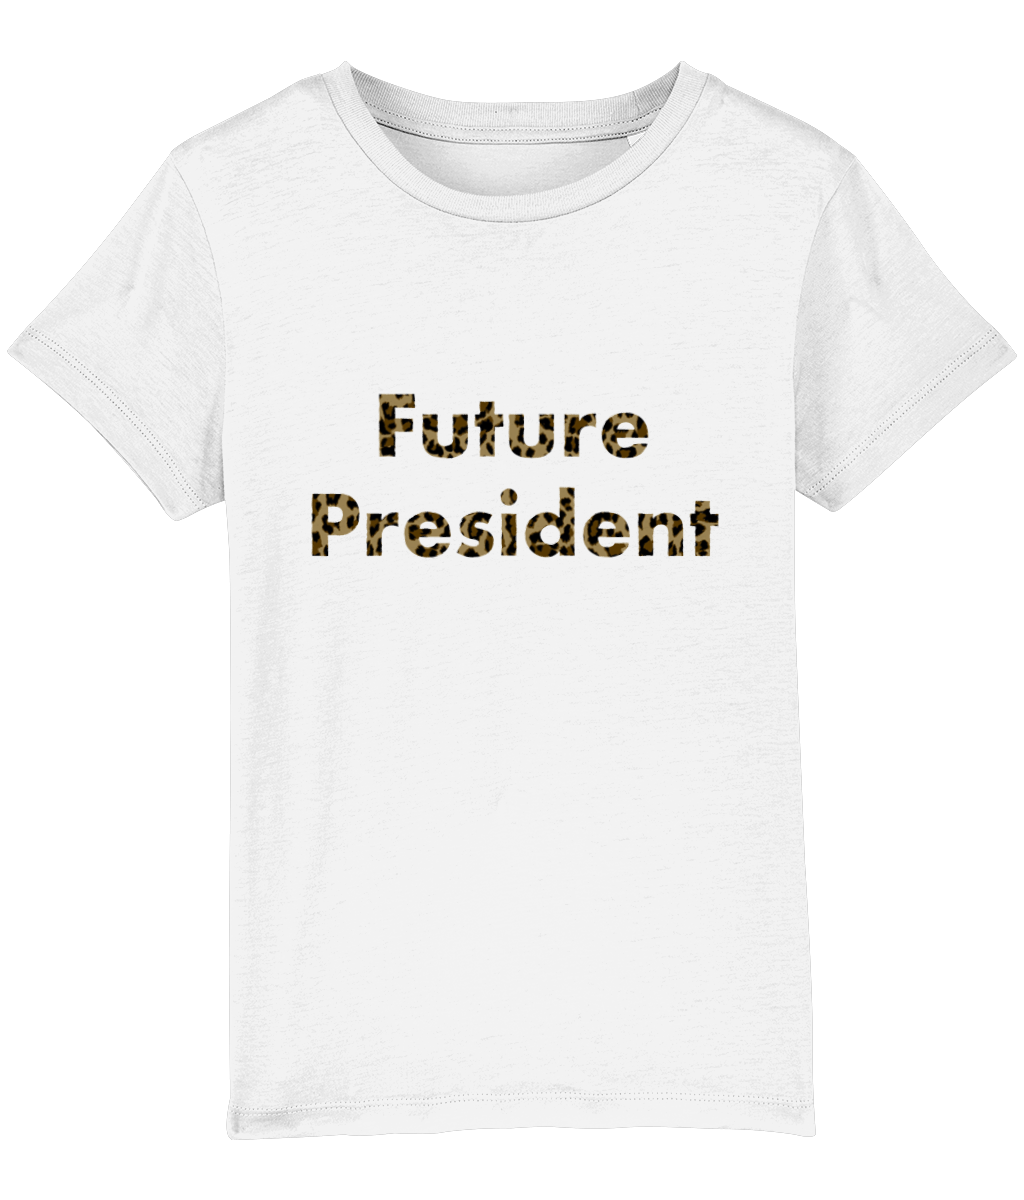 Future President - organic kid T-shirt - Leopard!.